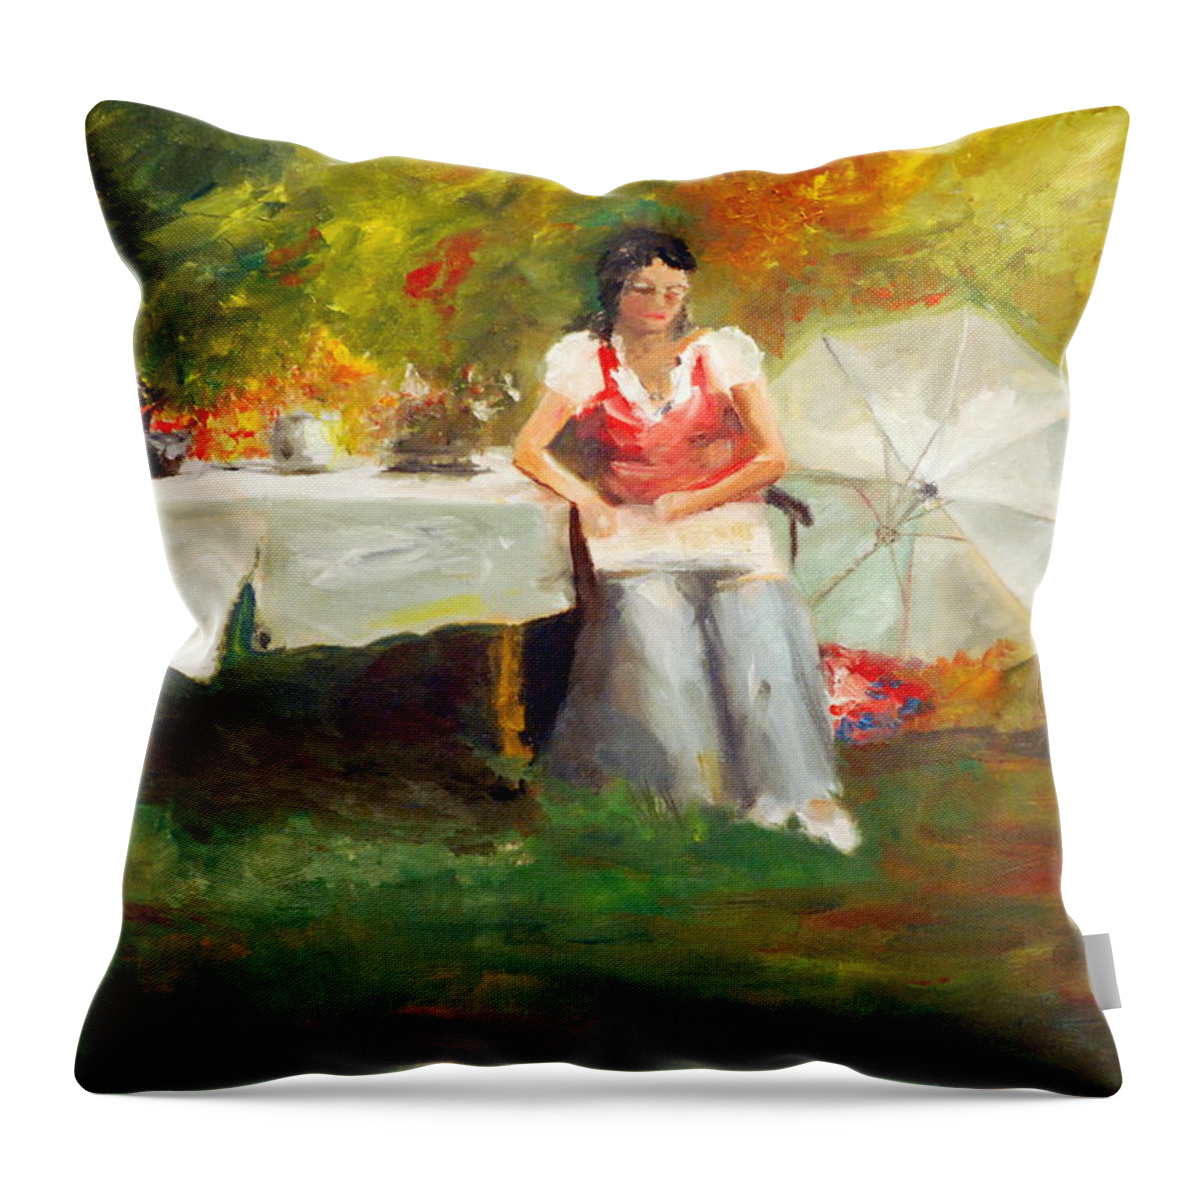 Carolina Tea Throw Pillow featuring the painting Carolina Tea by Phil Burton